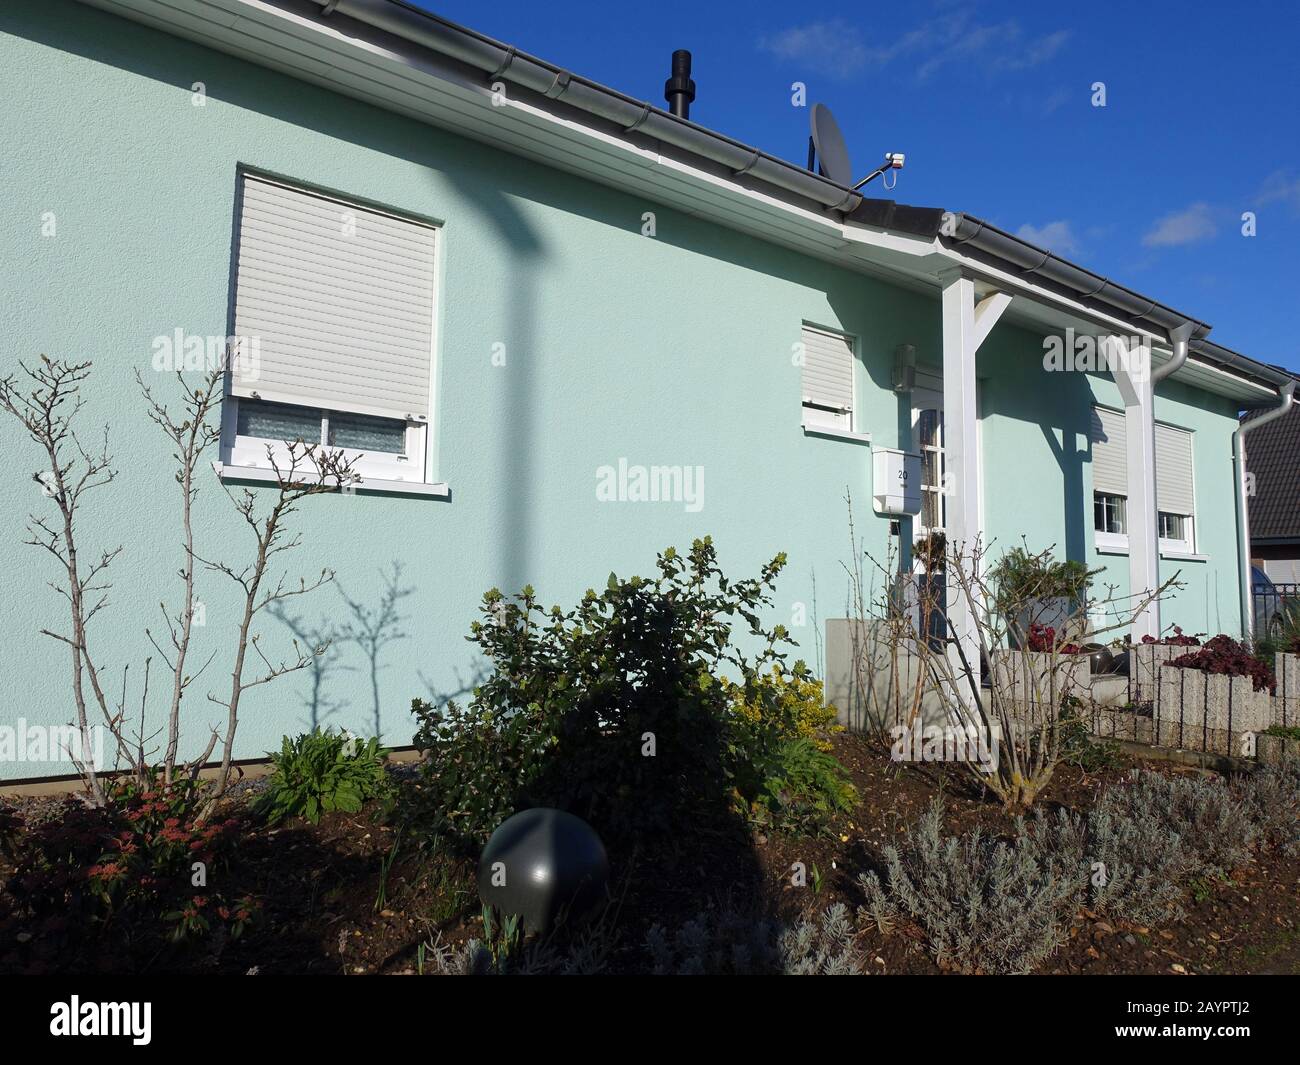 Einfamilienhaus mit Fassade in pastell grüner Farbe, Weilerswist, Nordrhein-Westfalen, Deutschland Stock Photo